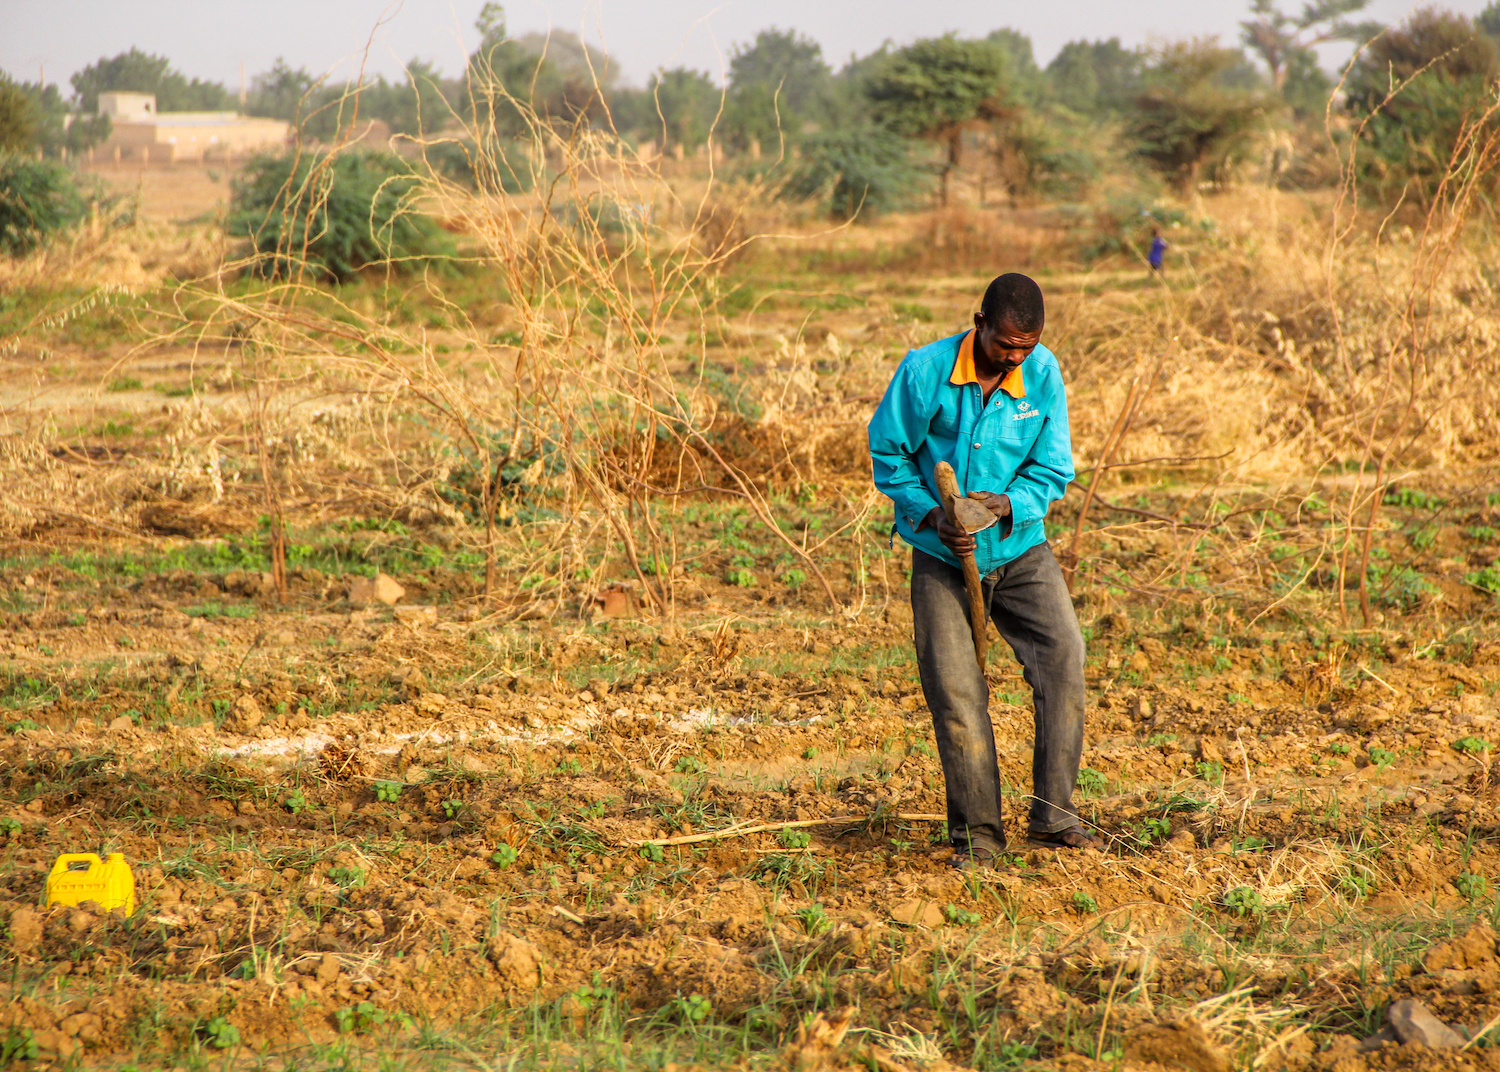 A man digging in a field in Africa